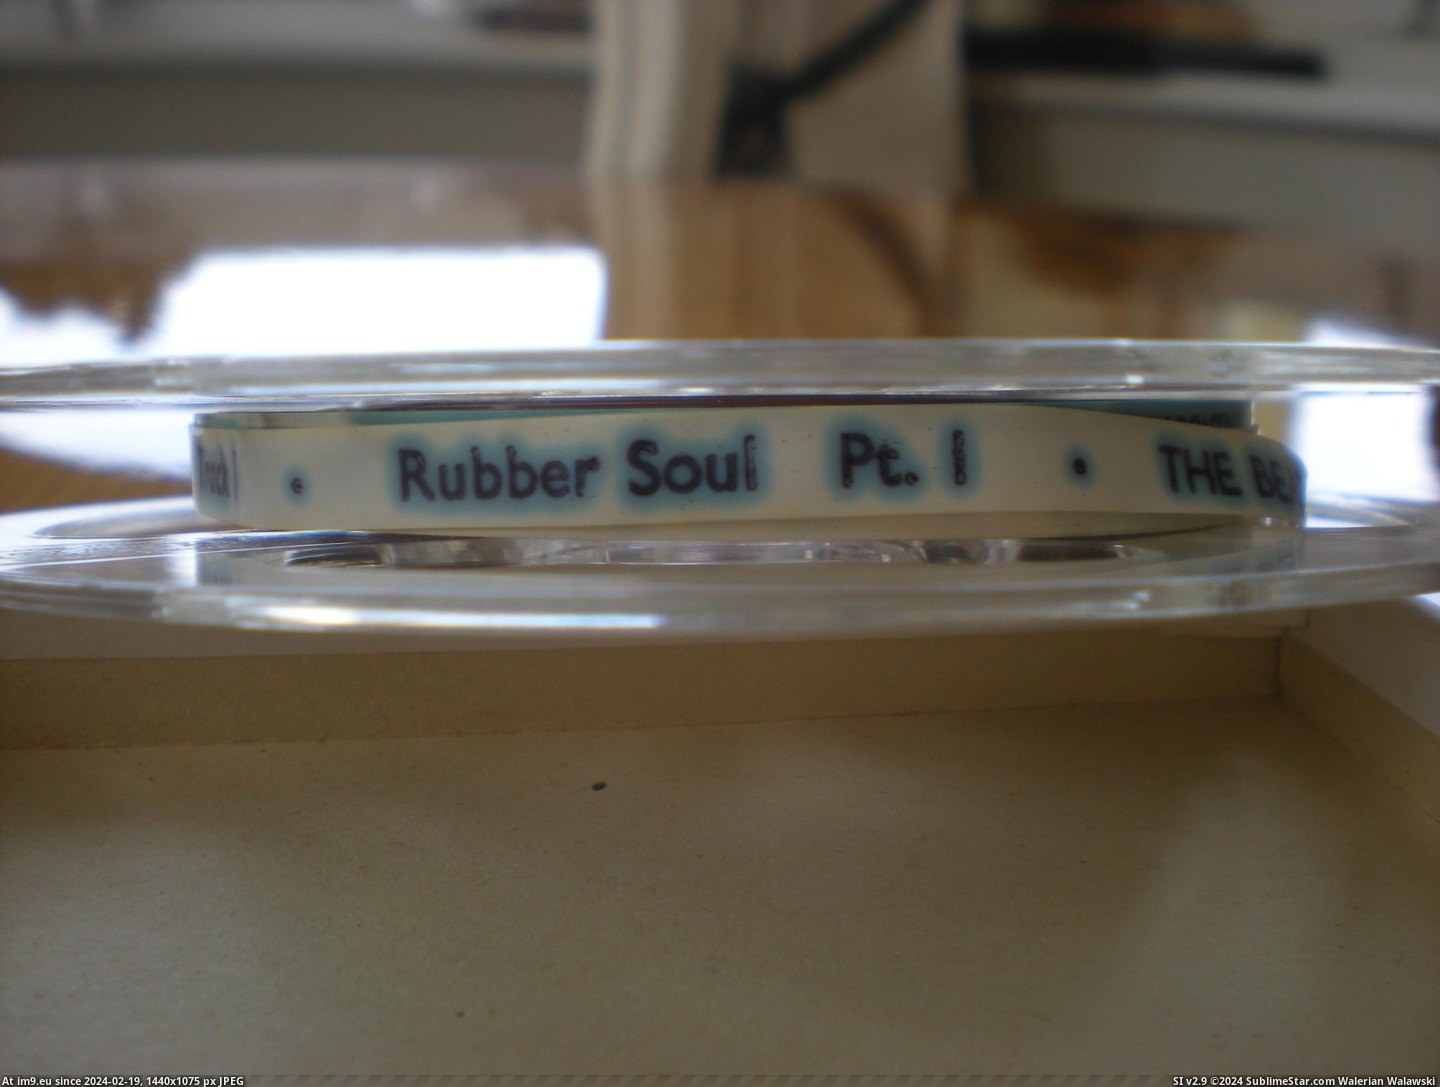 #Rubber #Soul #Reel Rubber Soul Reel 2 Pic. (Obraz z album new 1))